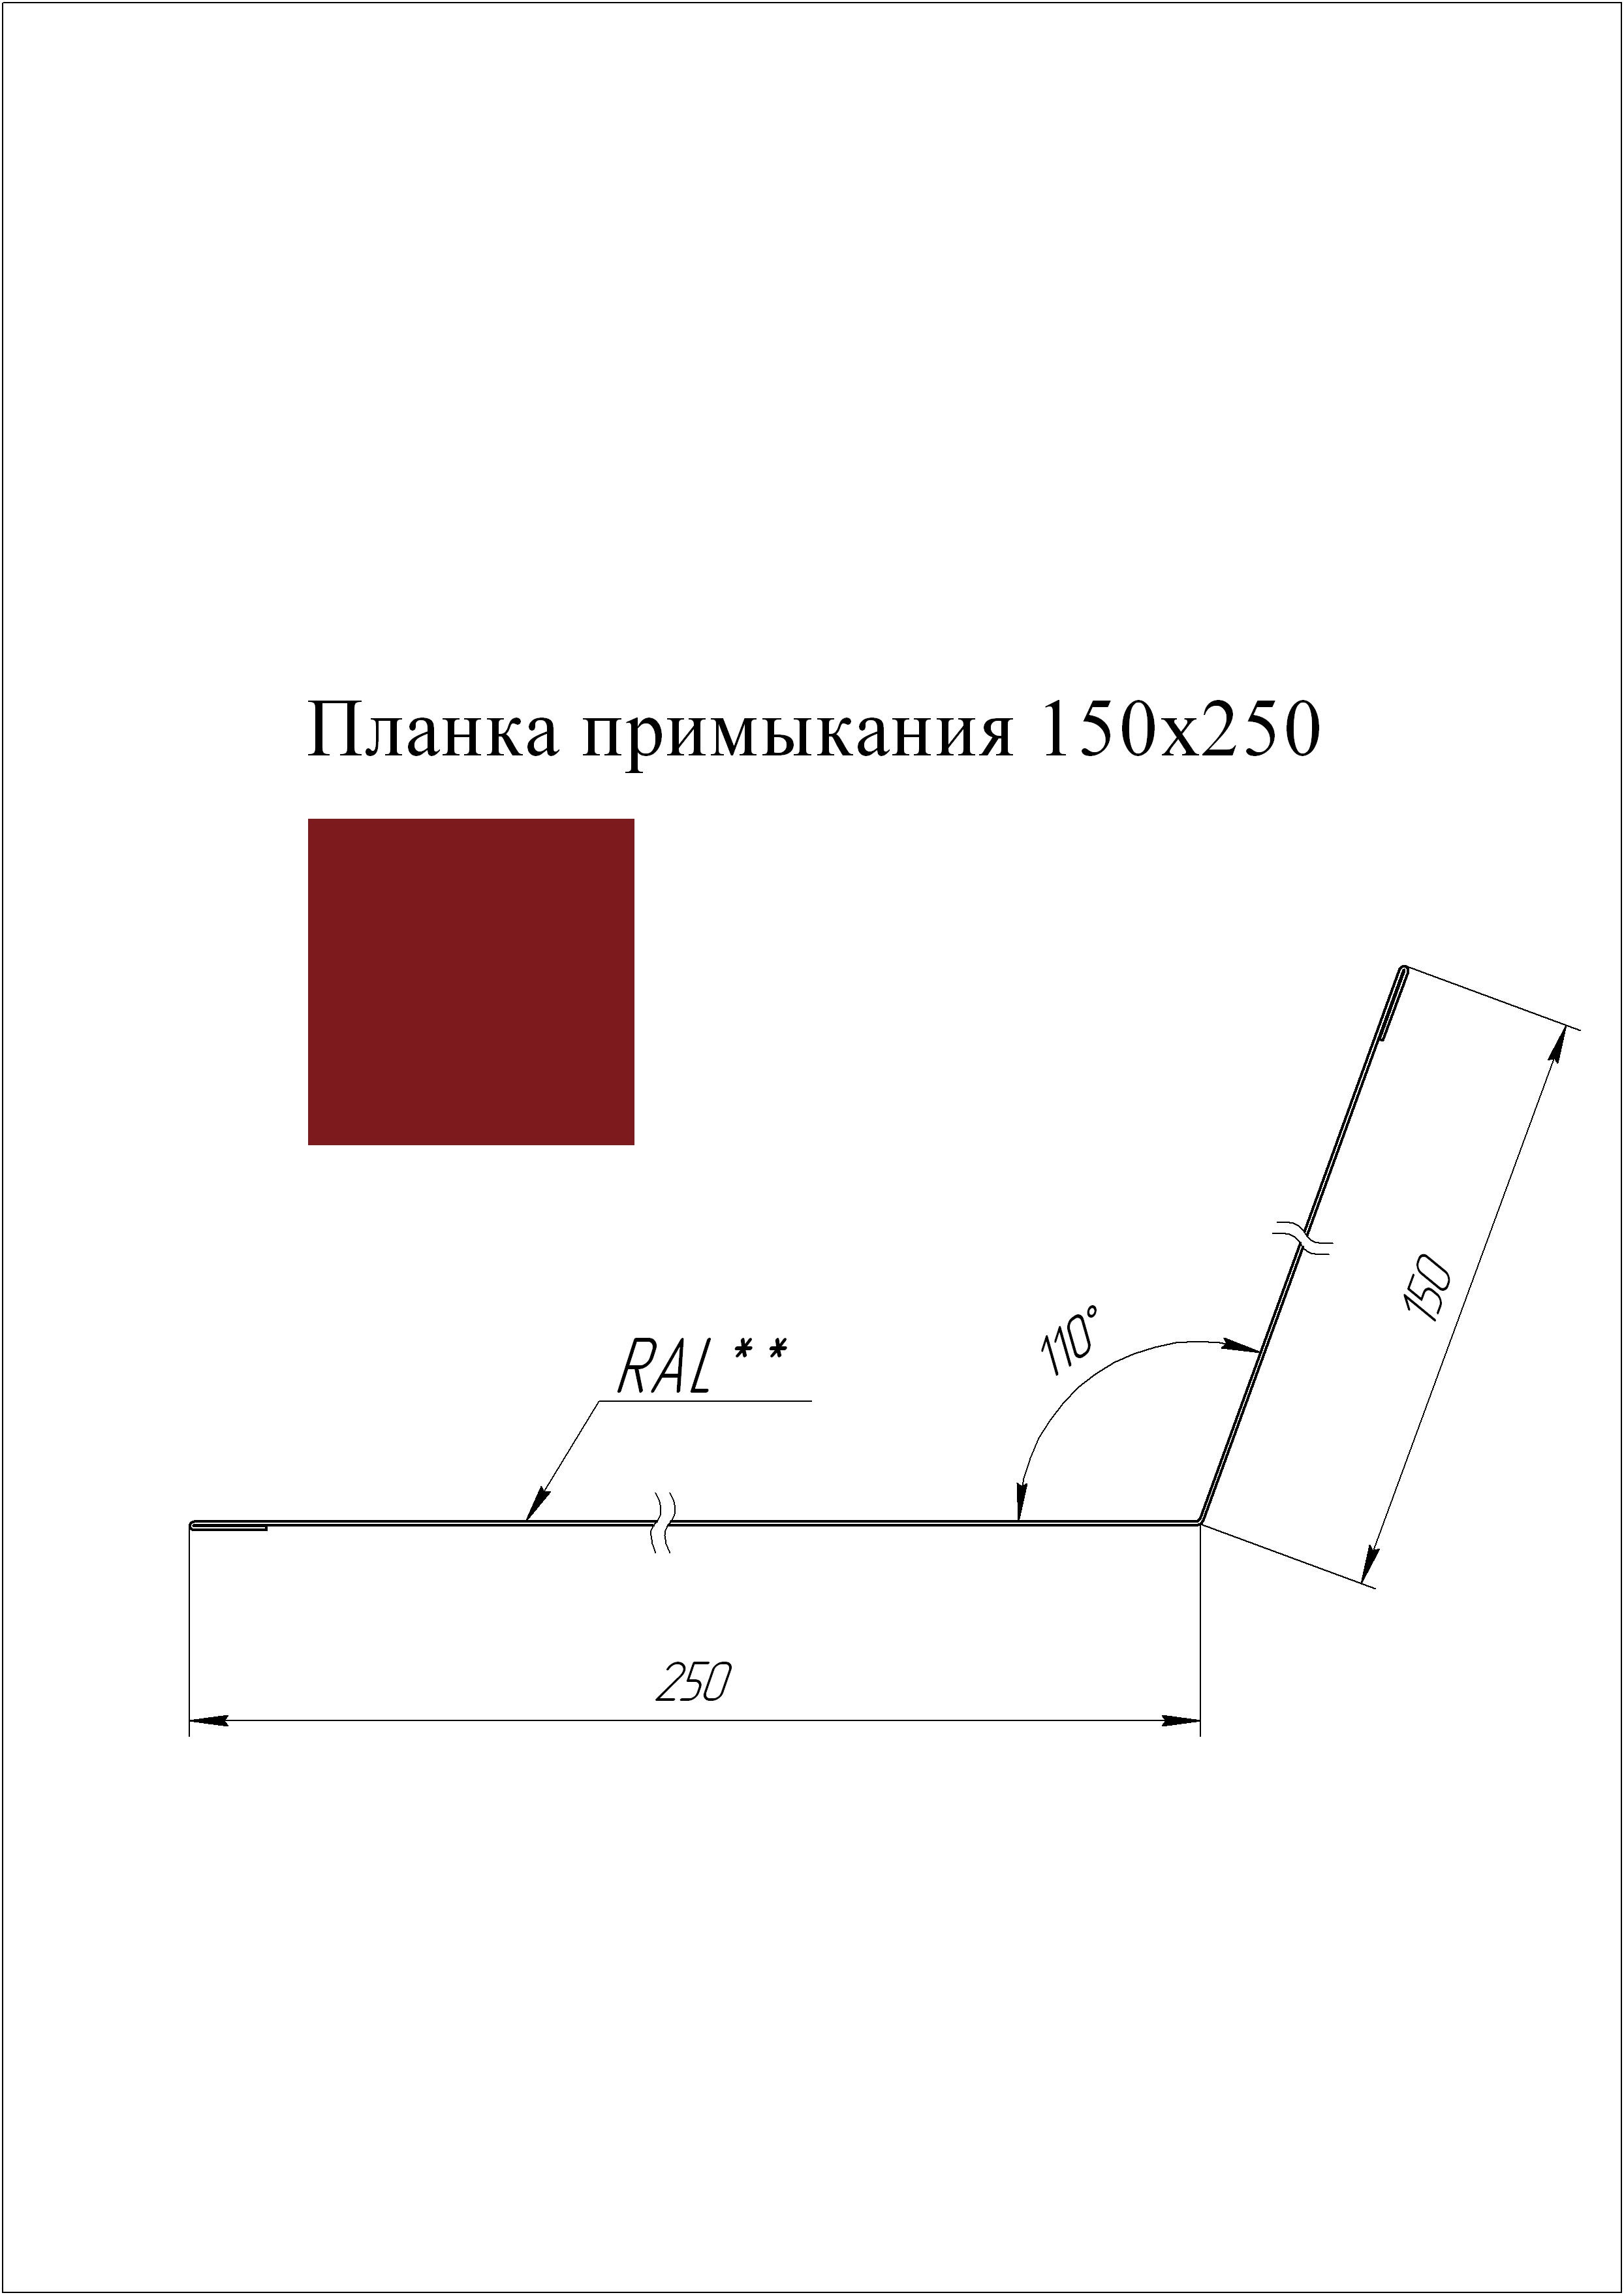 Планка примыкания 150*250 мм L=3 м GL PE-полиэстер 0,45 RAL 3003 - красный рубин